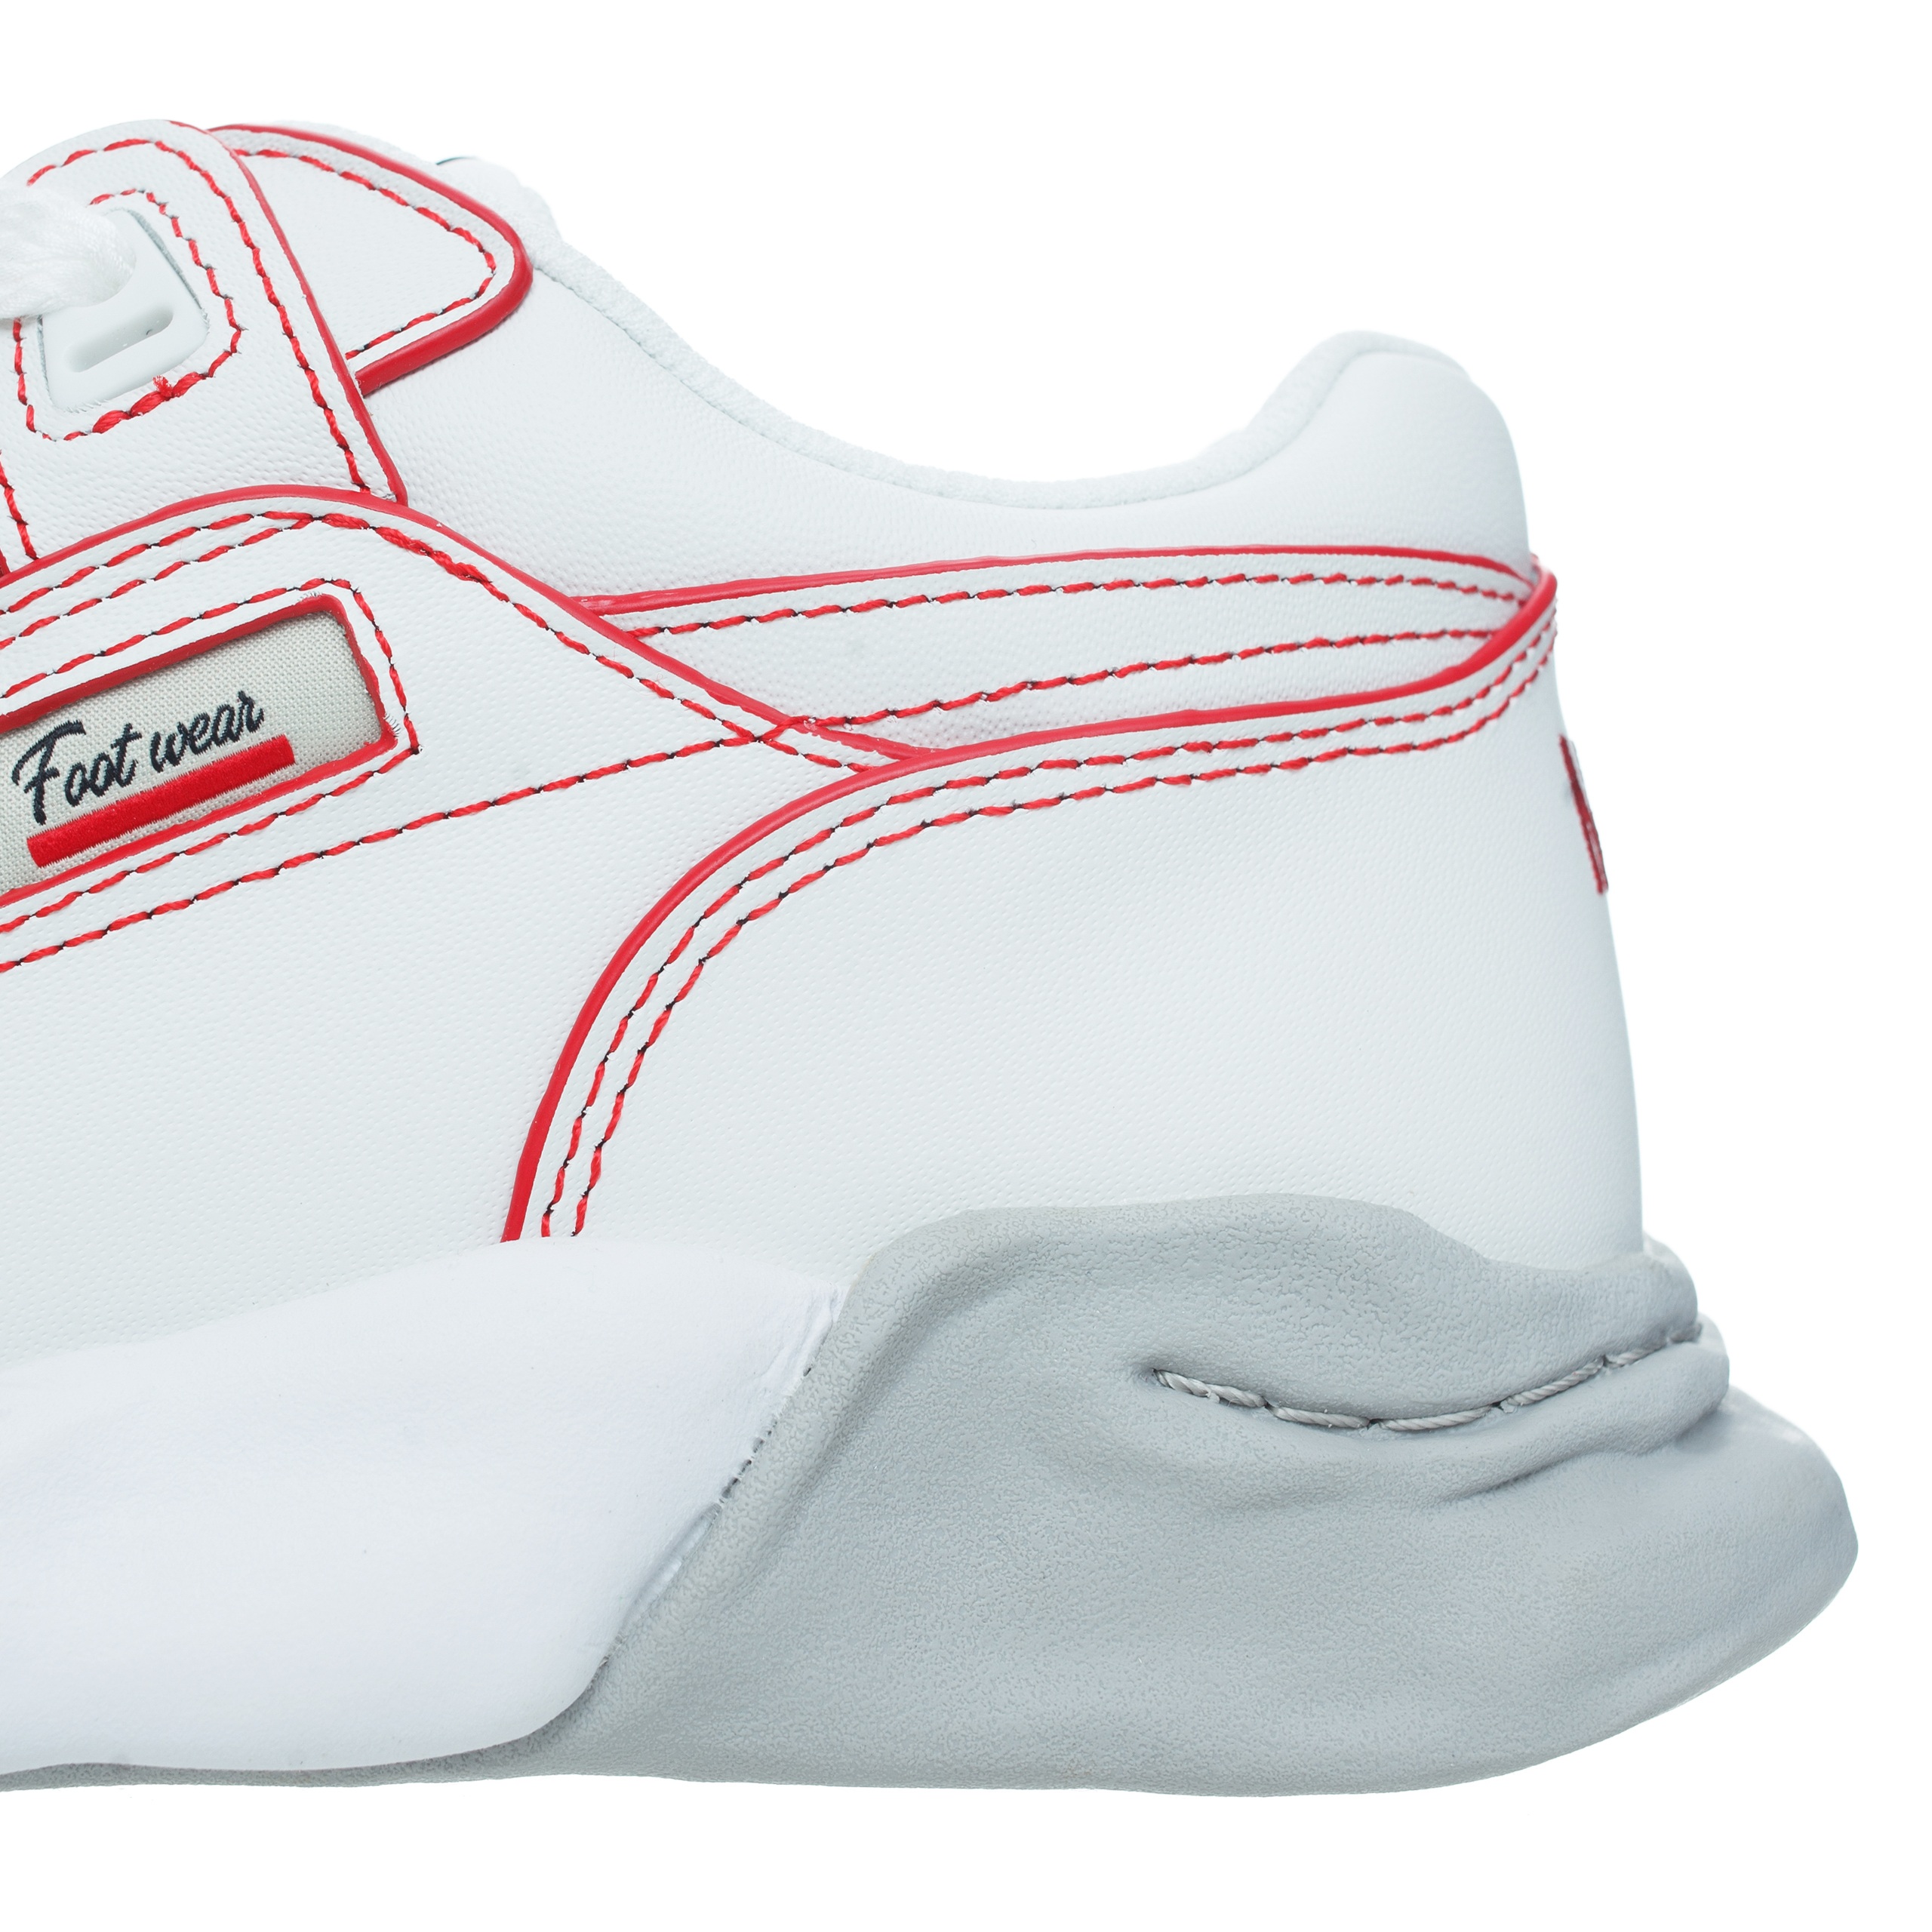 Кожаные кроссовки Parker с контрастной строчкой Maison Mihara Yasuhiro A11FW709/WHITE, размер 37;38;39;40;41 A11FW709/WHITE - фото 5